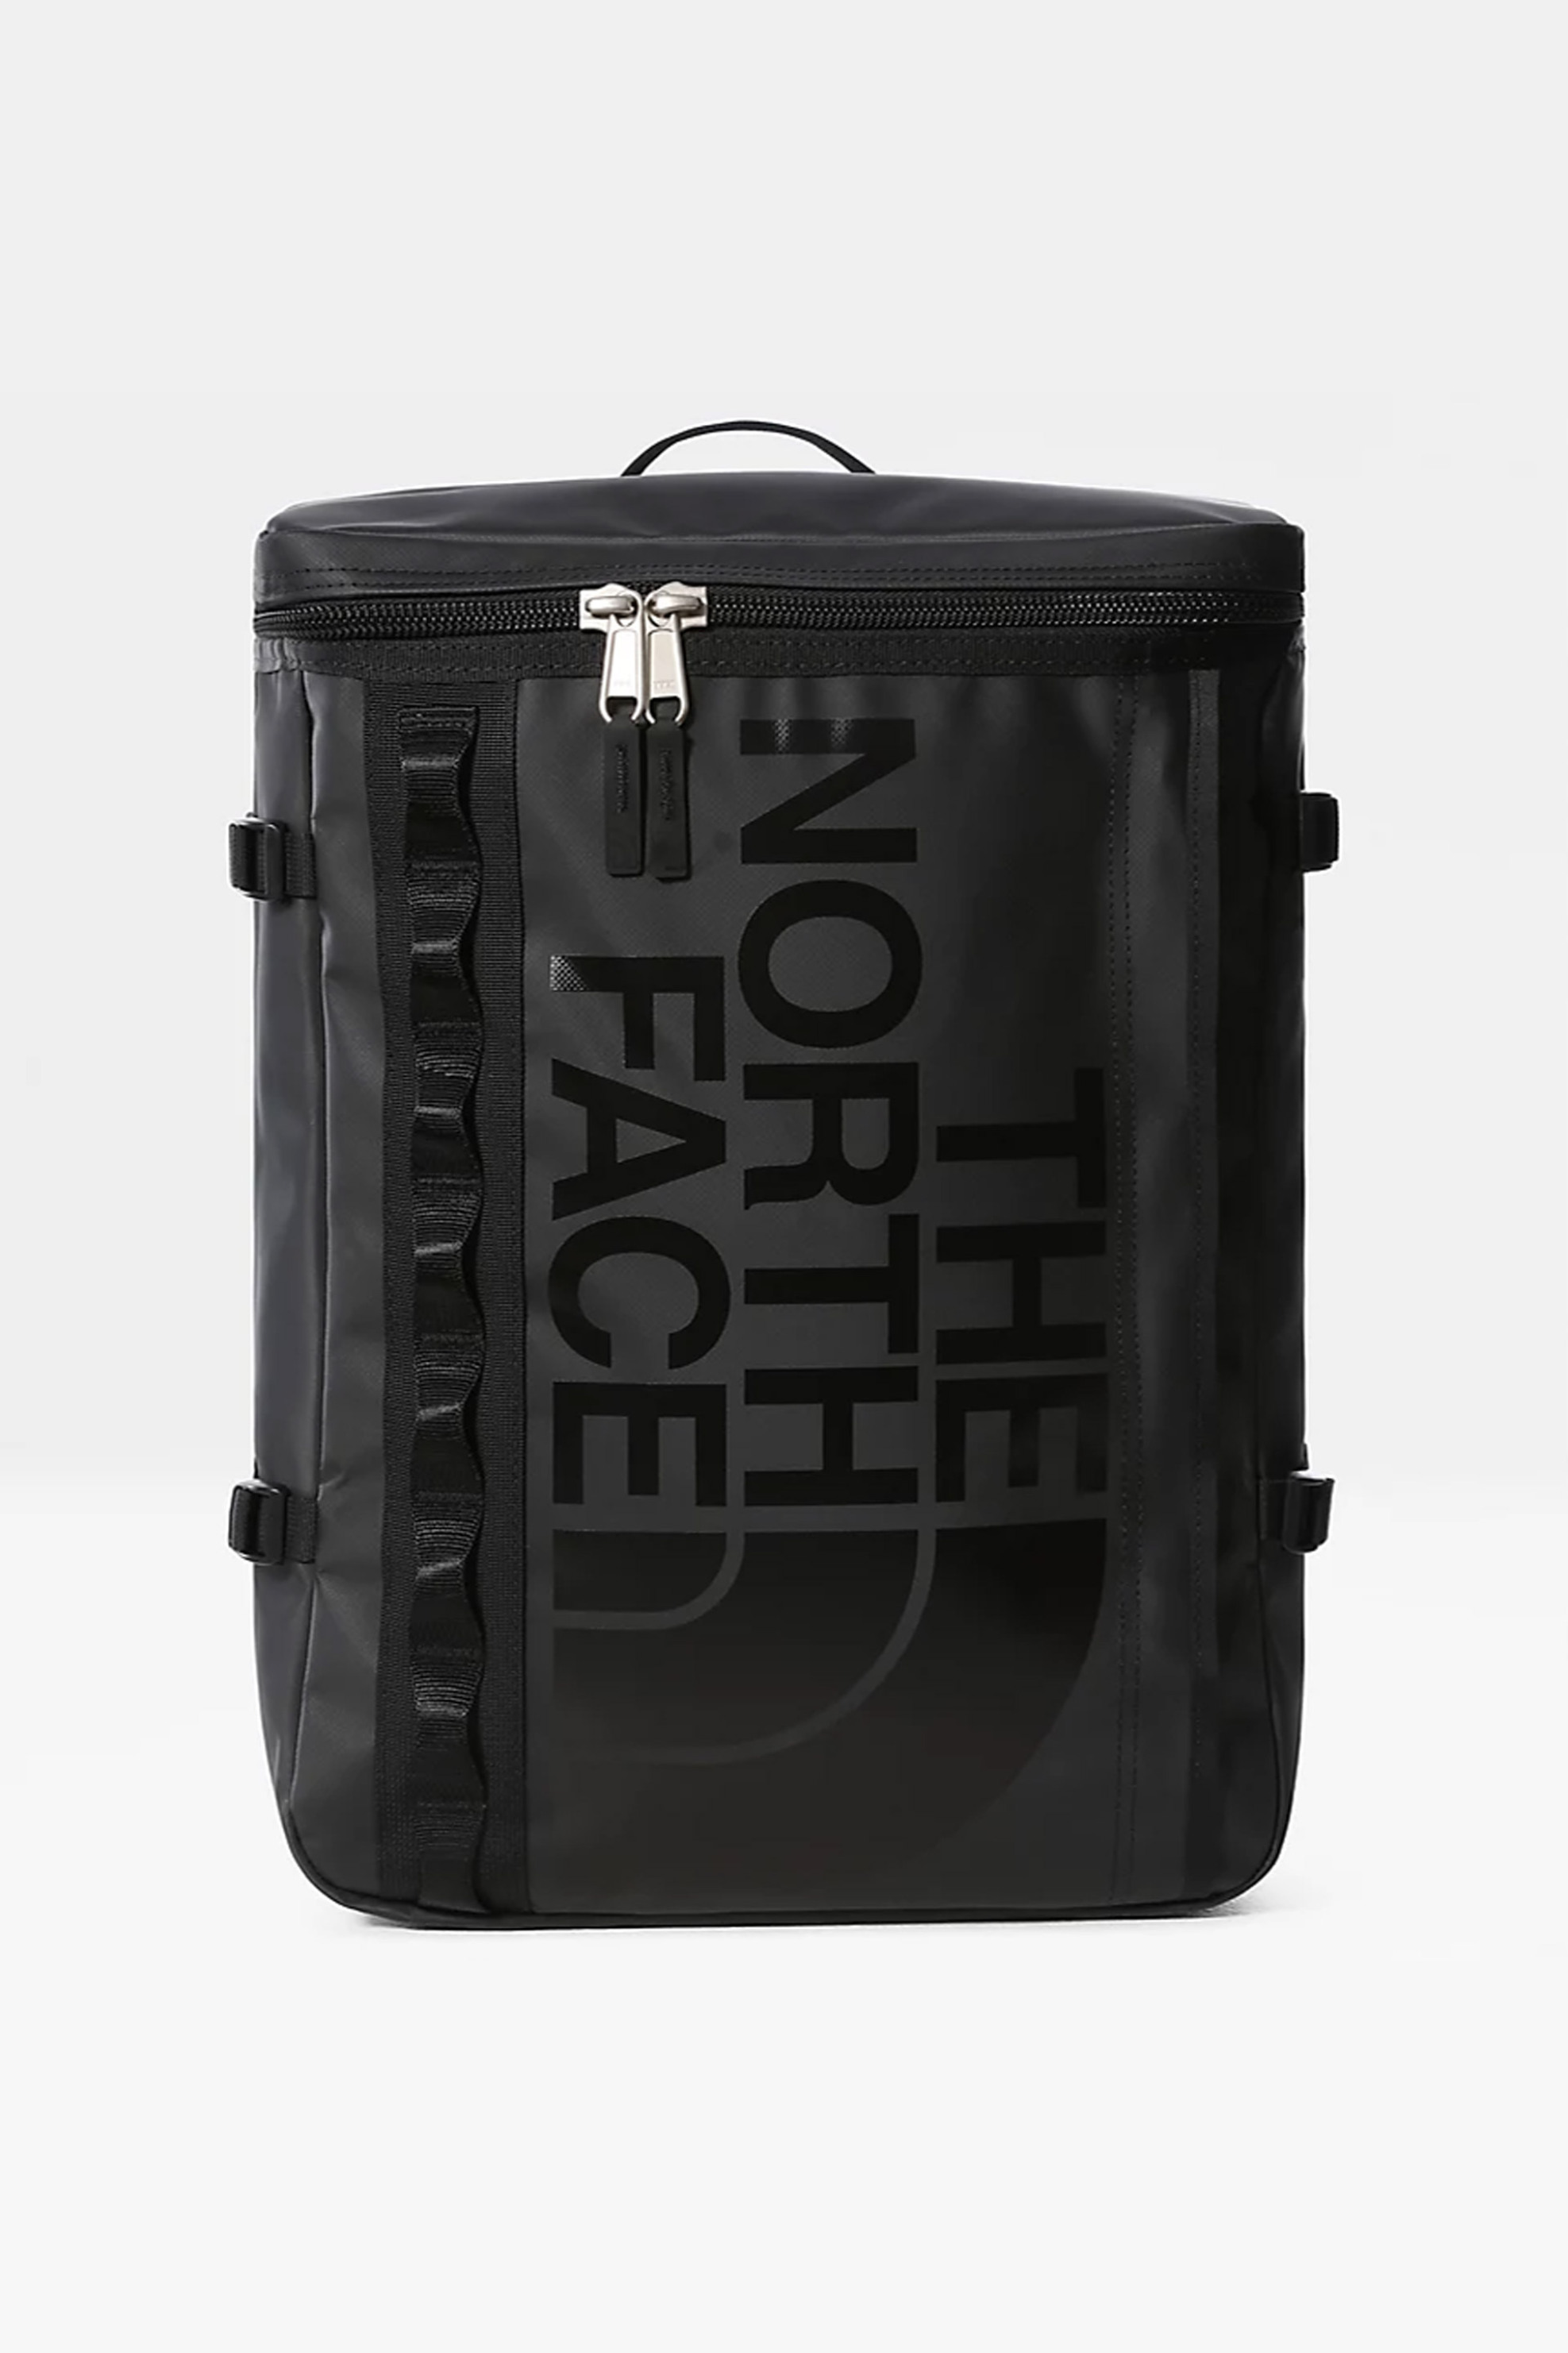 Ανδρική Μόδα > Ανδρικές Τσάντες > Ανδρικά Σακίδια & Backpacks The North Face unisex backpack μονόχρωμο με λογότυπο "Base Camp Duffle" - NF0A3KVRKX71 Μαύρο